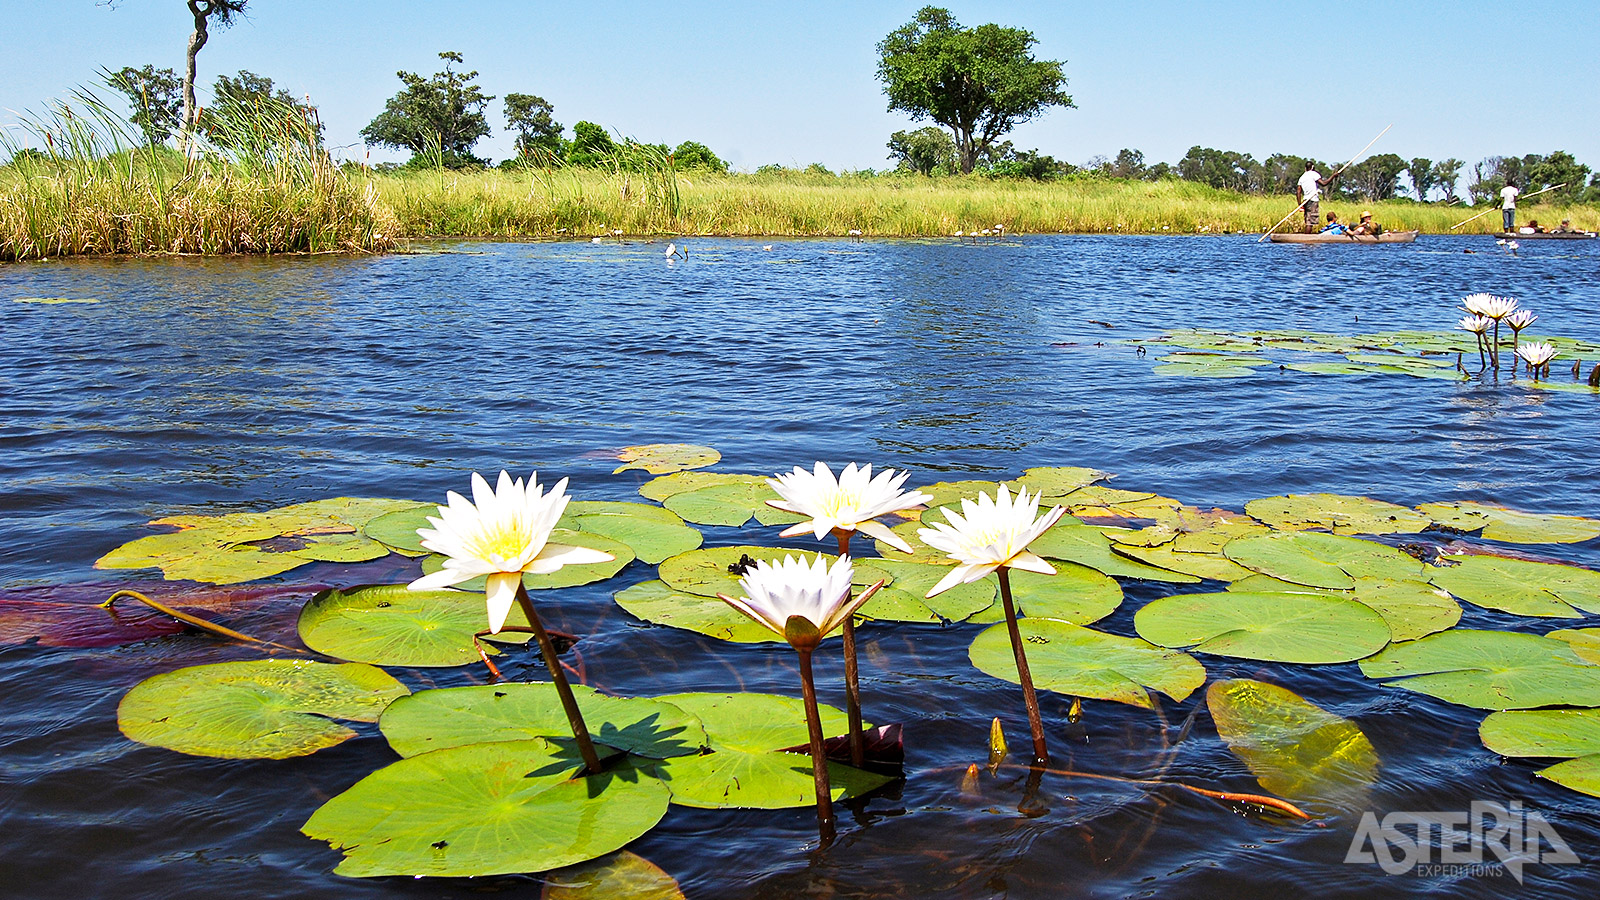 De Okavango Delta is een rijk moerasgebied dat wordt gevoed door de gelijknamige rivier